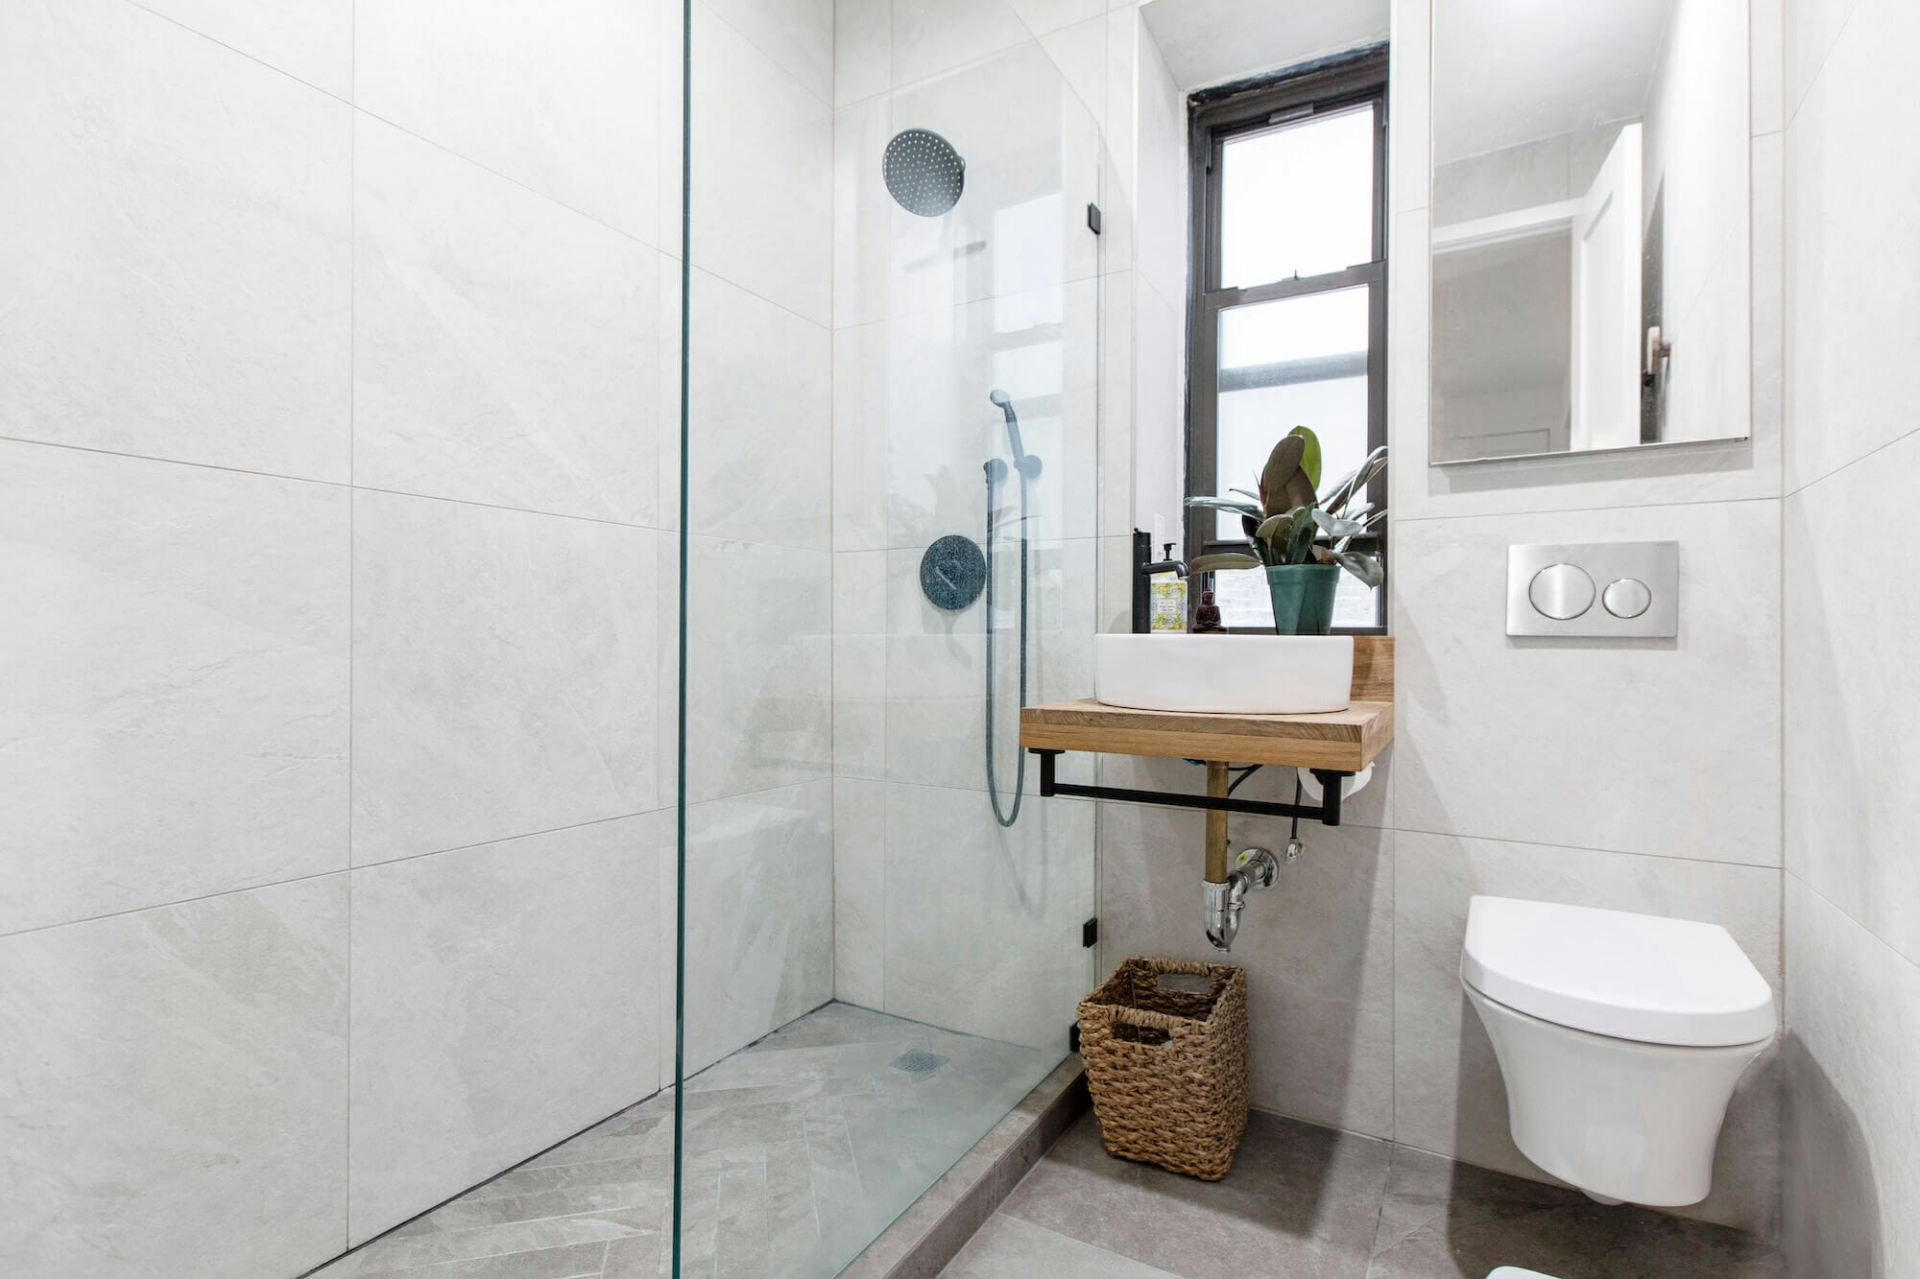 Nhiều năm trở lại đây, bồn cầu treo tường ngày càng phổ biến trong thiết kế nội thất cho phòng tắm thêm tiện nghi, hiện đại.